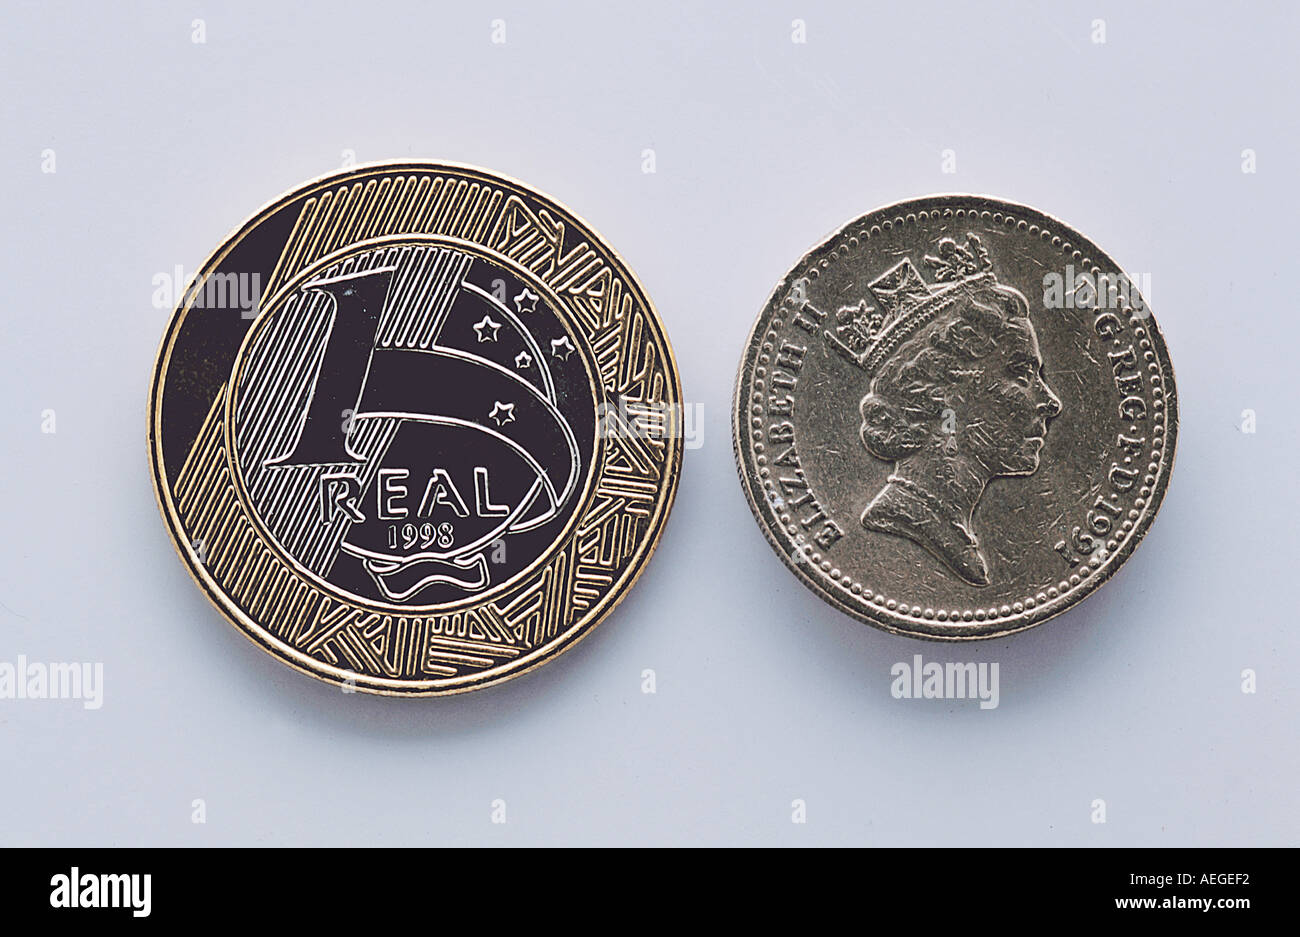 Monete ufficio cambio valute un reale valore di cancelletto round carving con due queen s effige varie di denaro Foto Stock